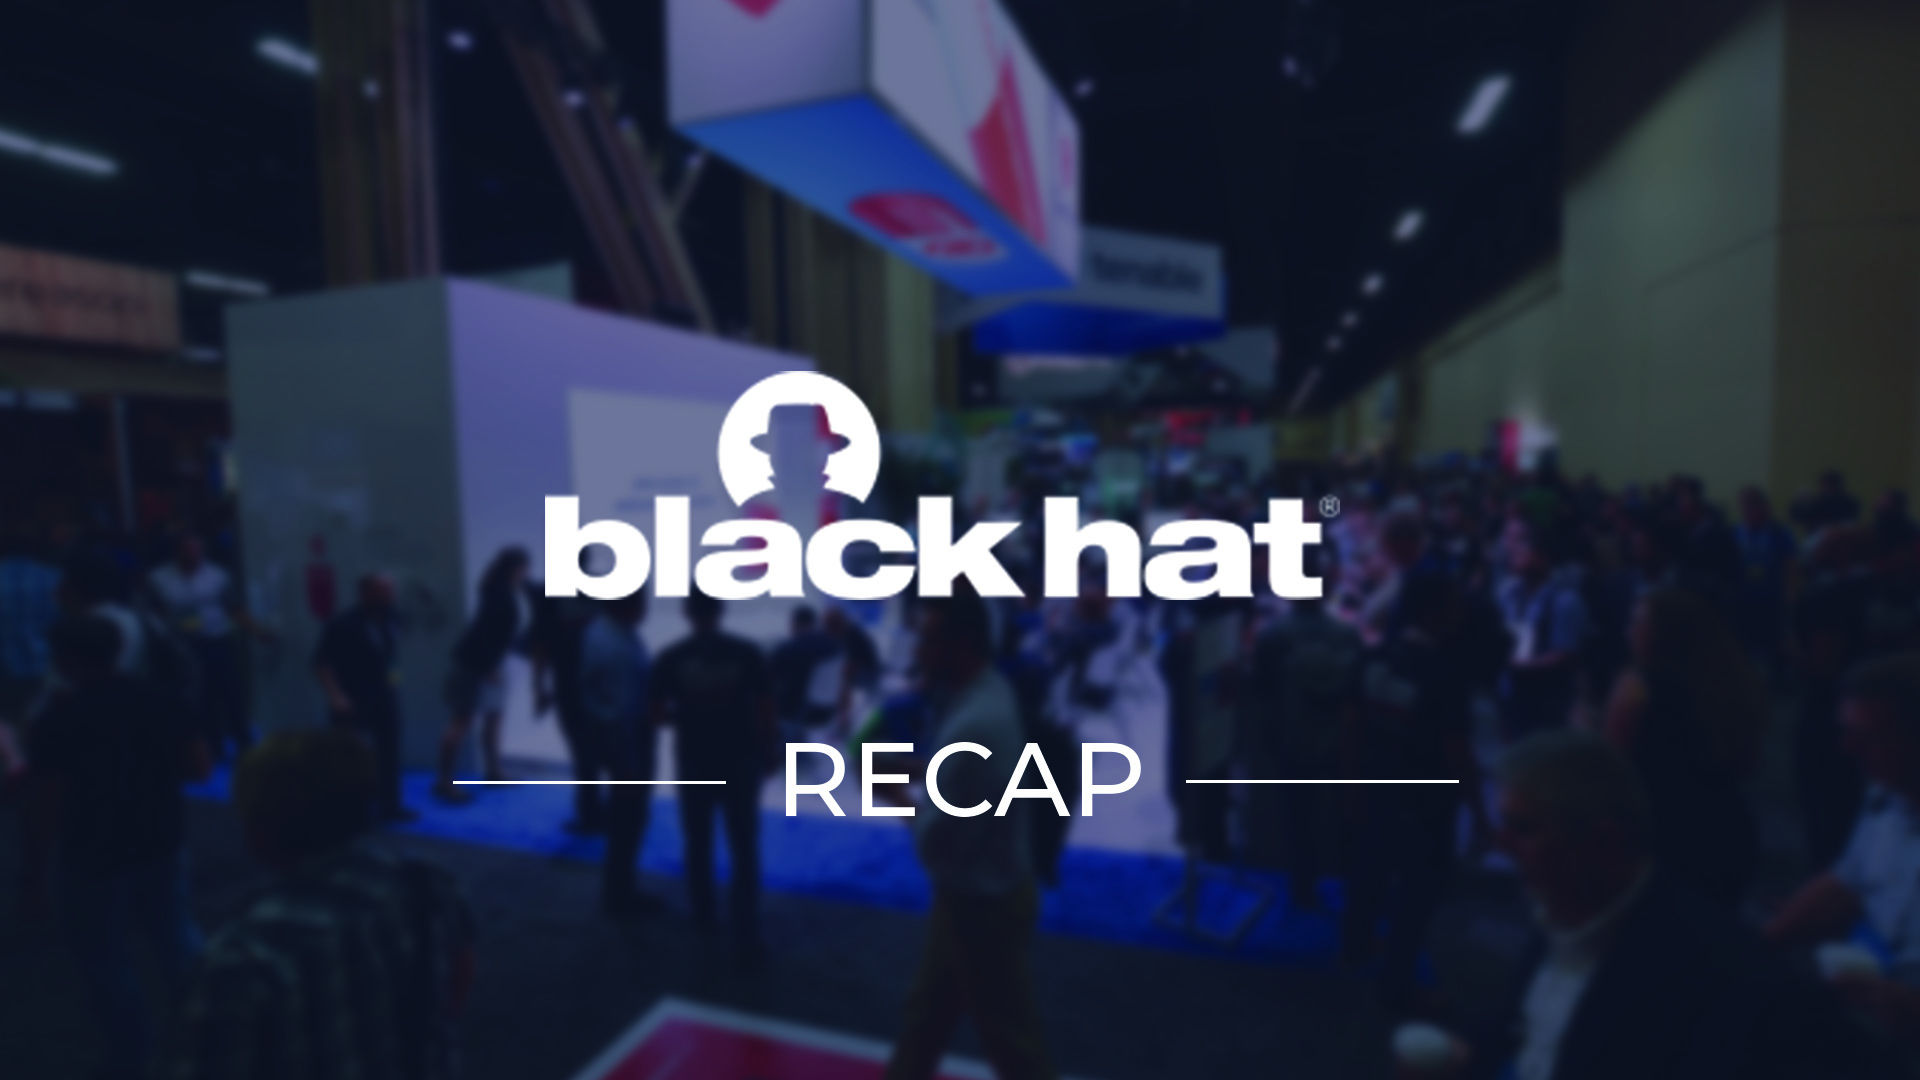 blackhat conference recap